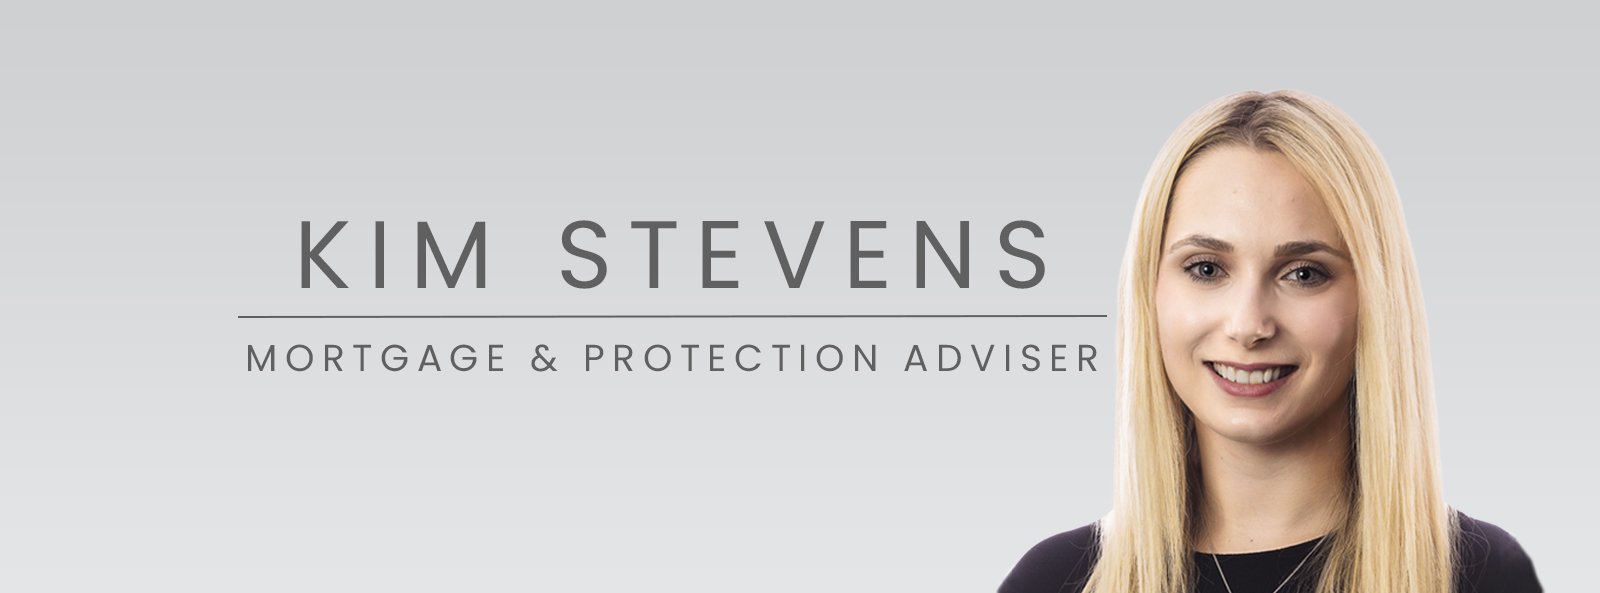 Kim Stevens - Mortgage & Protection Adviser